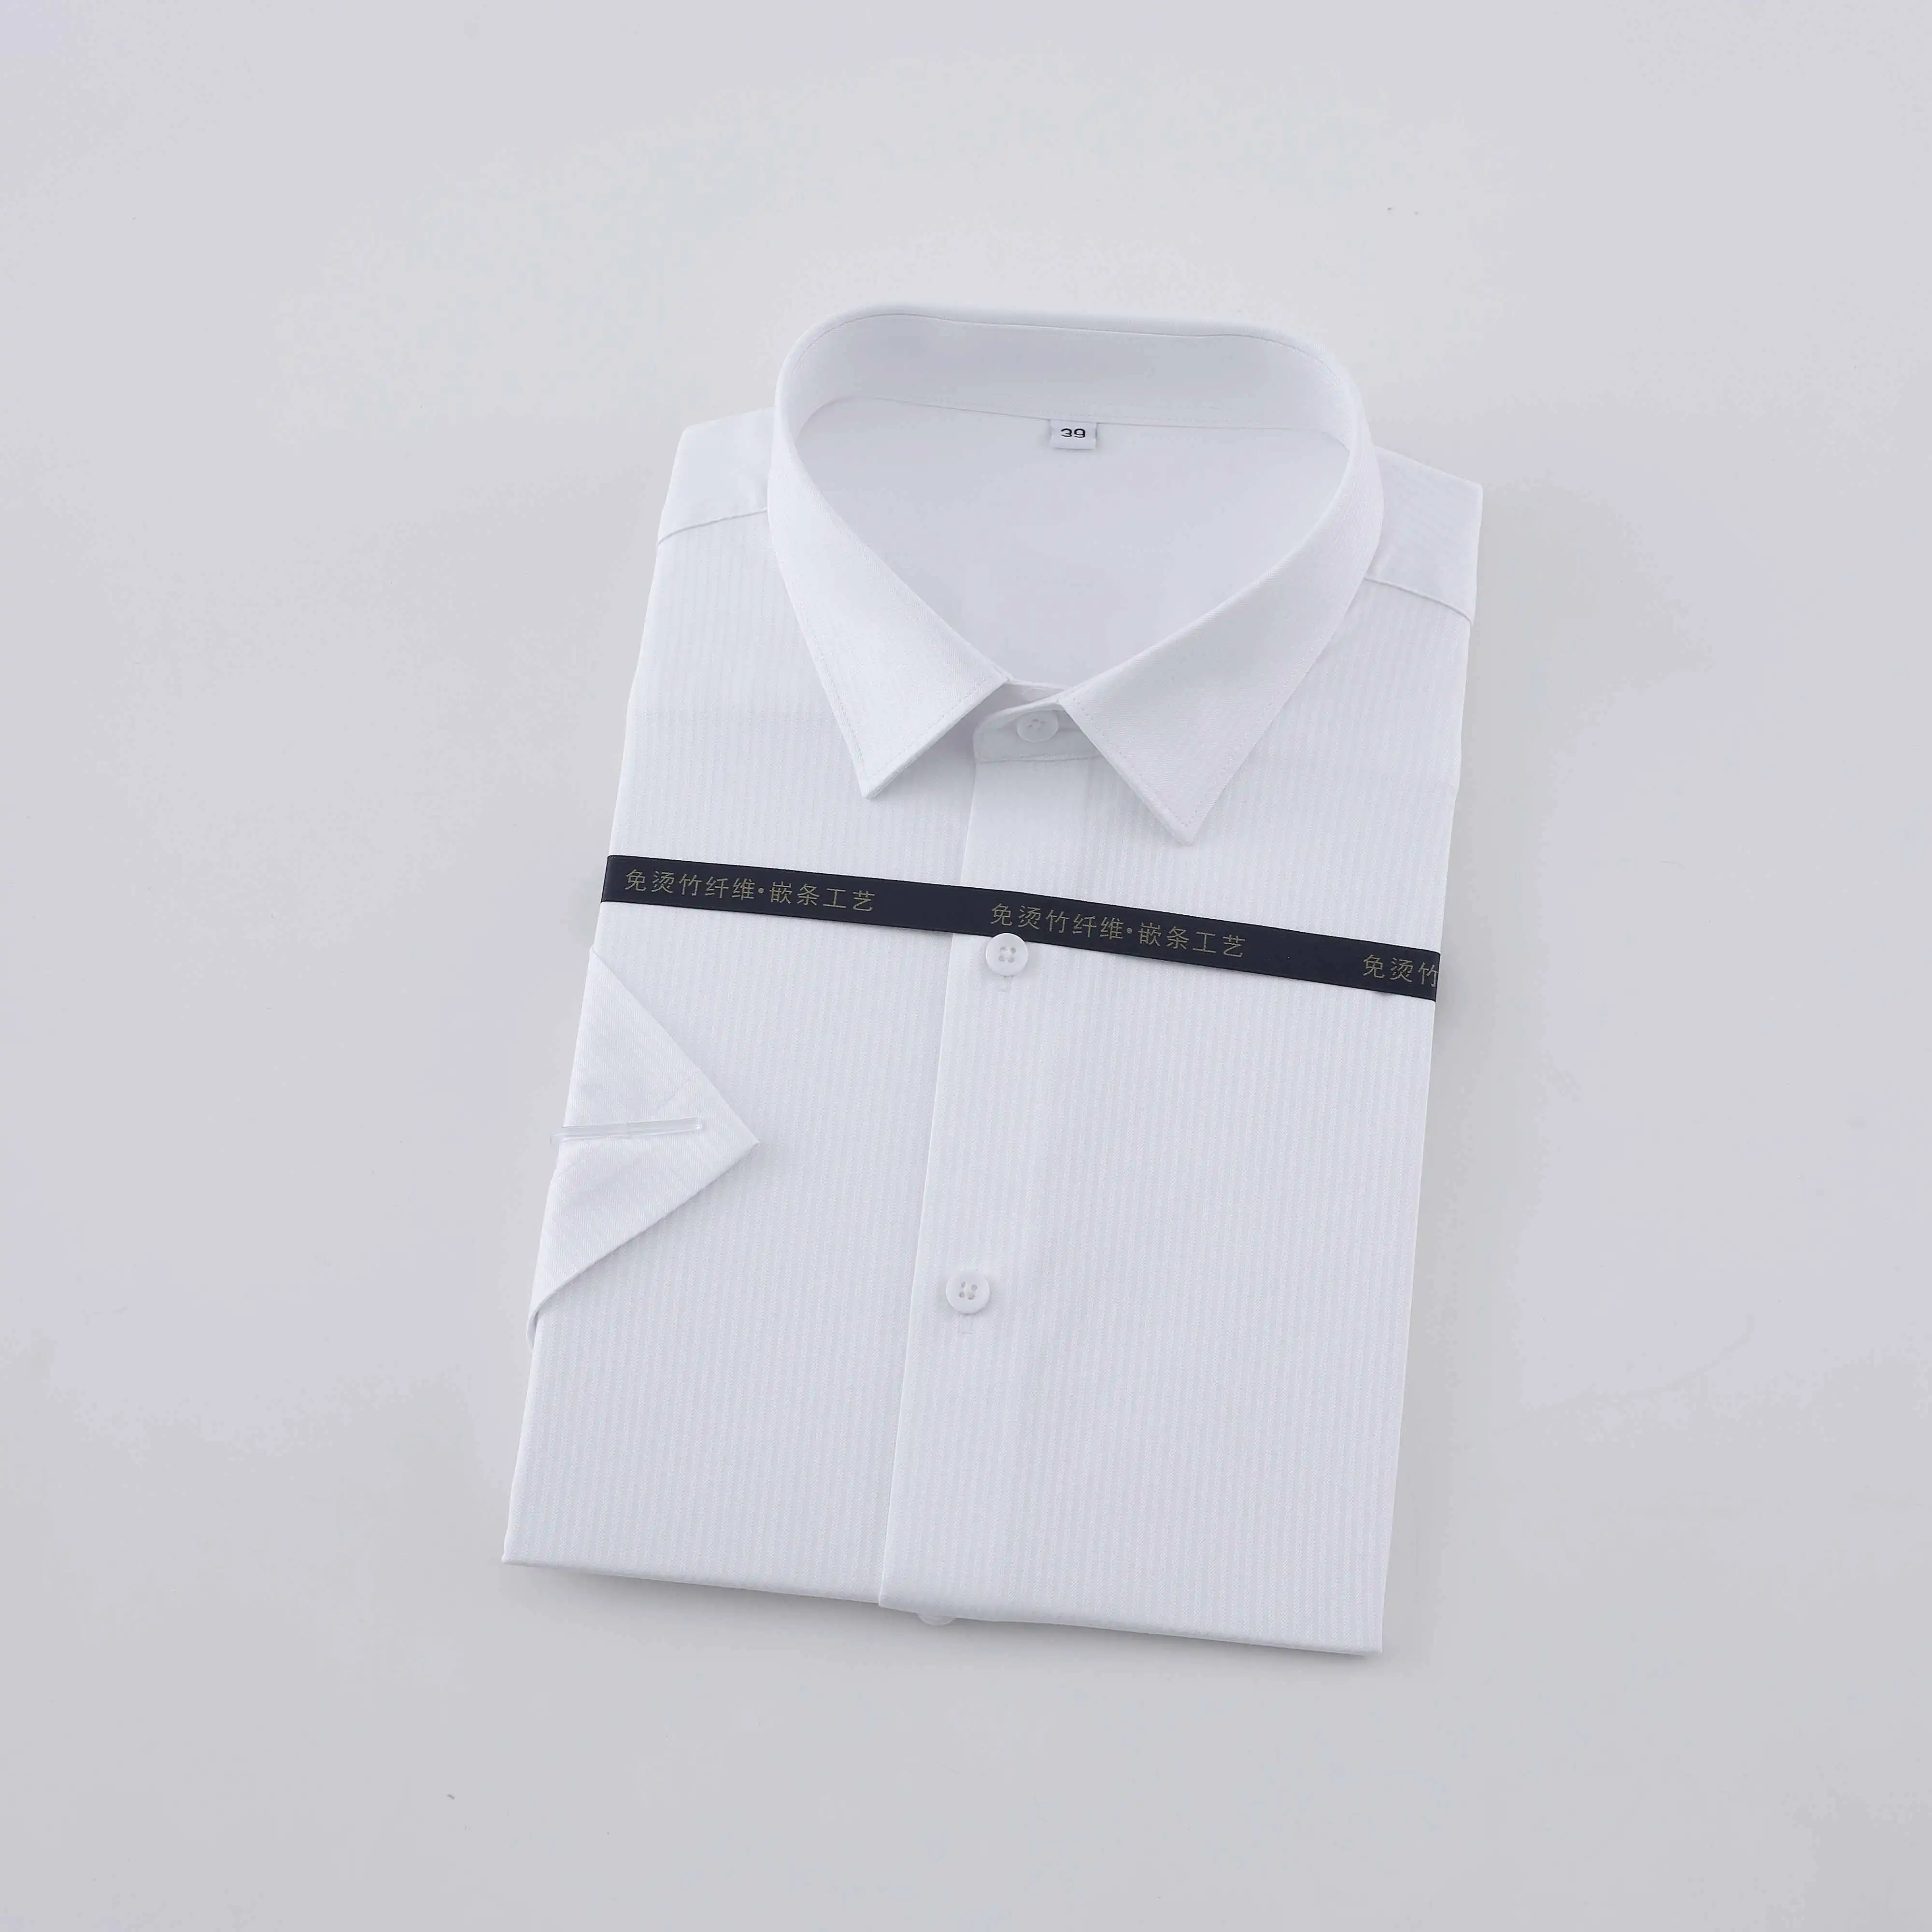 OEM/ODM camisas hombre de alta calidad de manga larga \ corta de fibra de bambú camisa de trabajo camisas de vestir para hombres resistentes a las arrugas